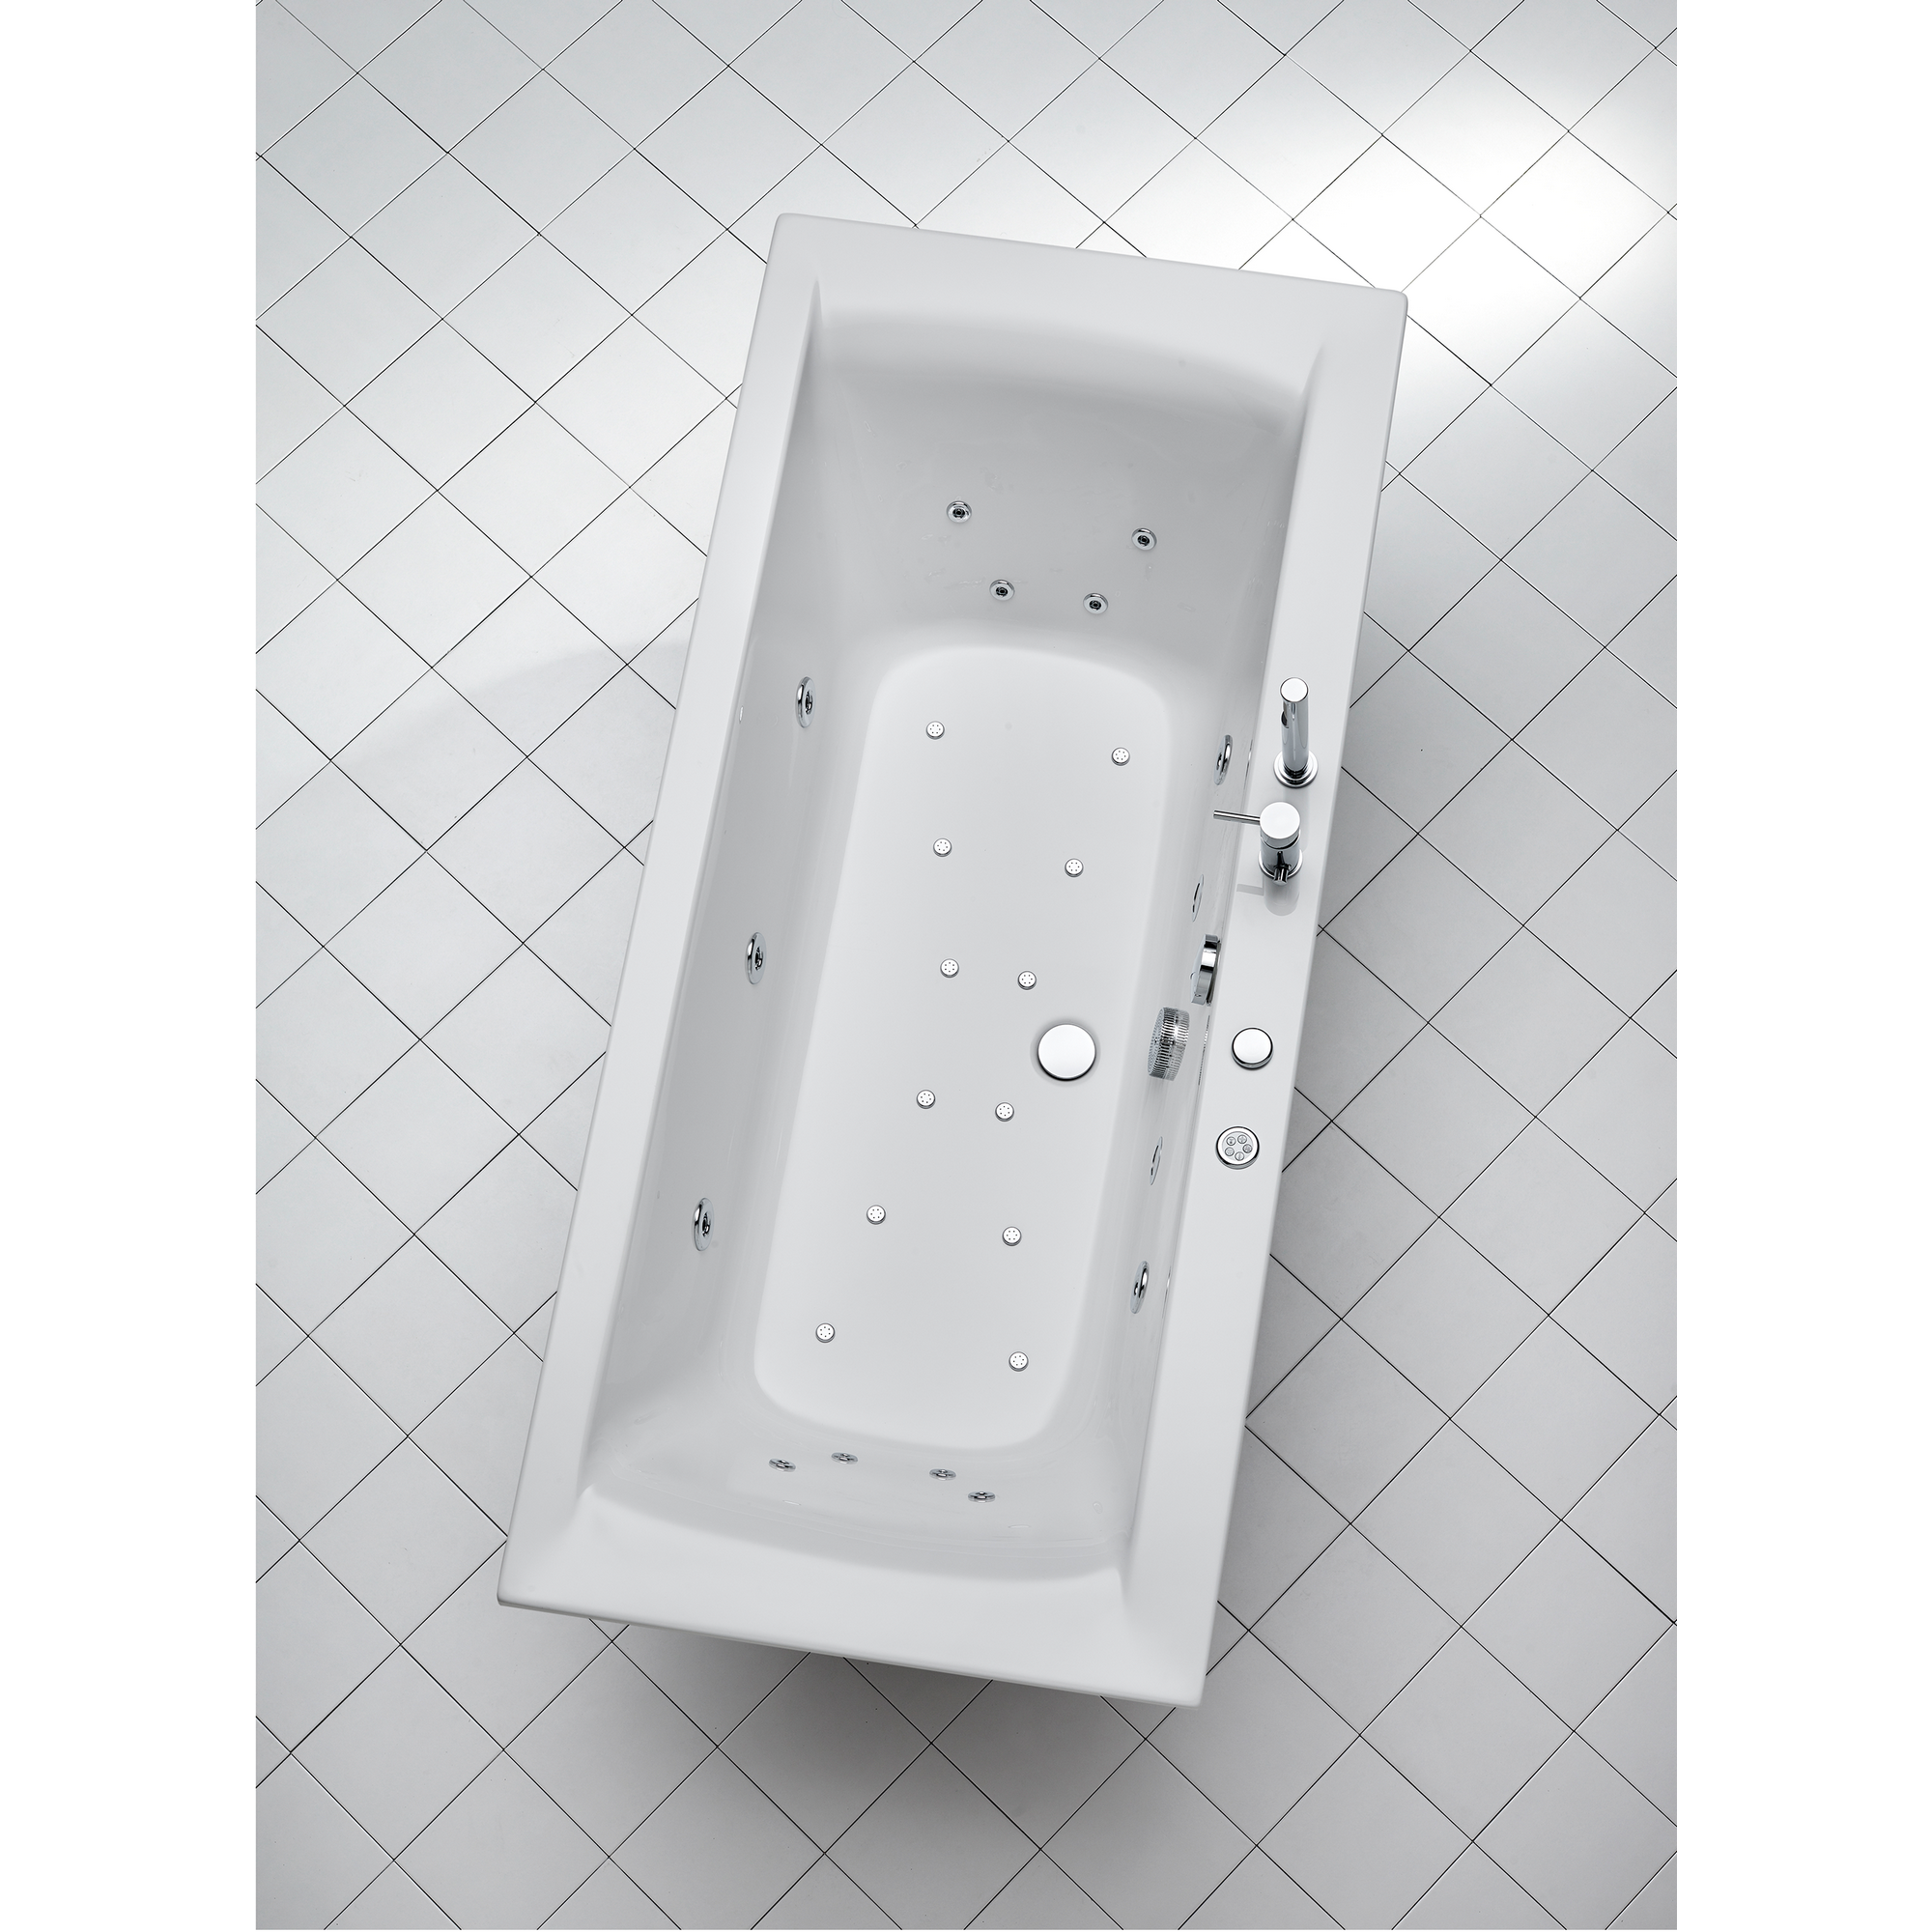 Whirlpool-Komplettset 'Rosa' Sanitäracryl weiß 170 x 80 x 45 cm + product picture